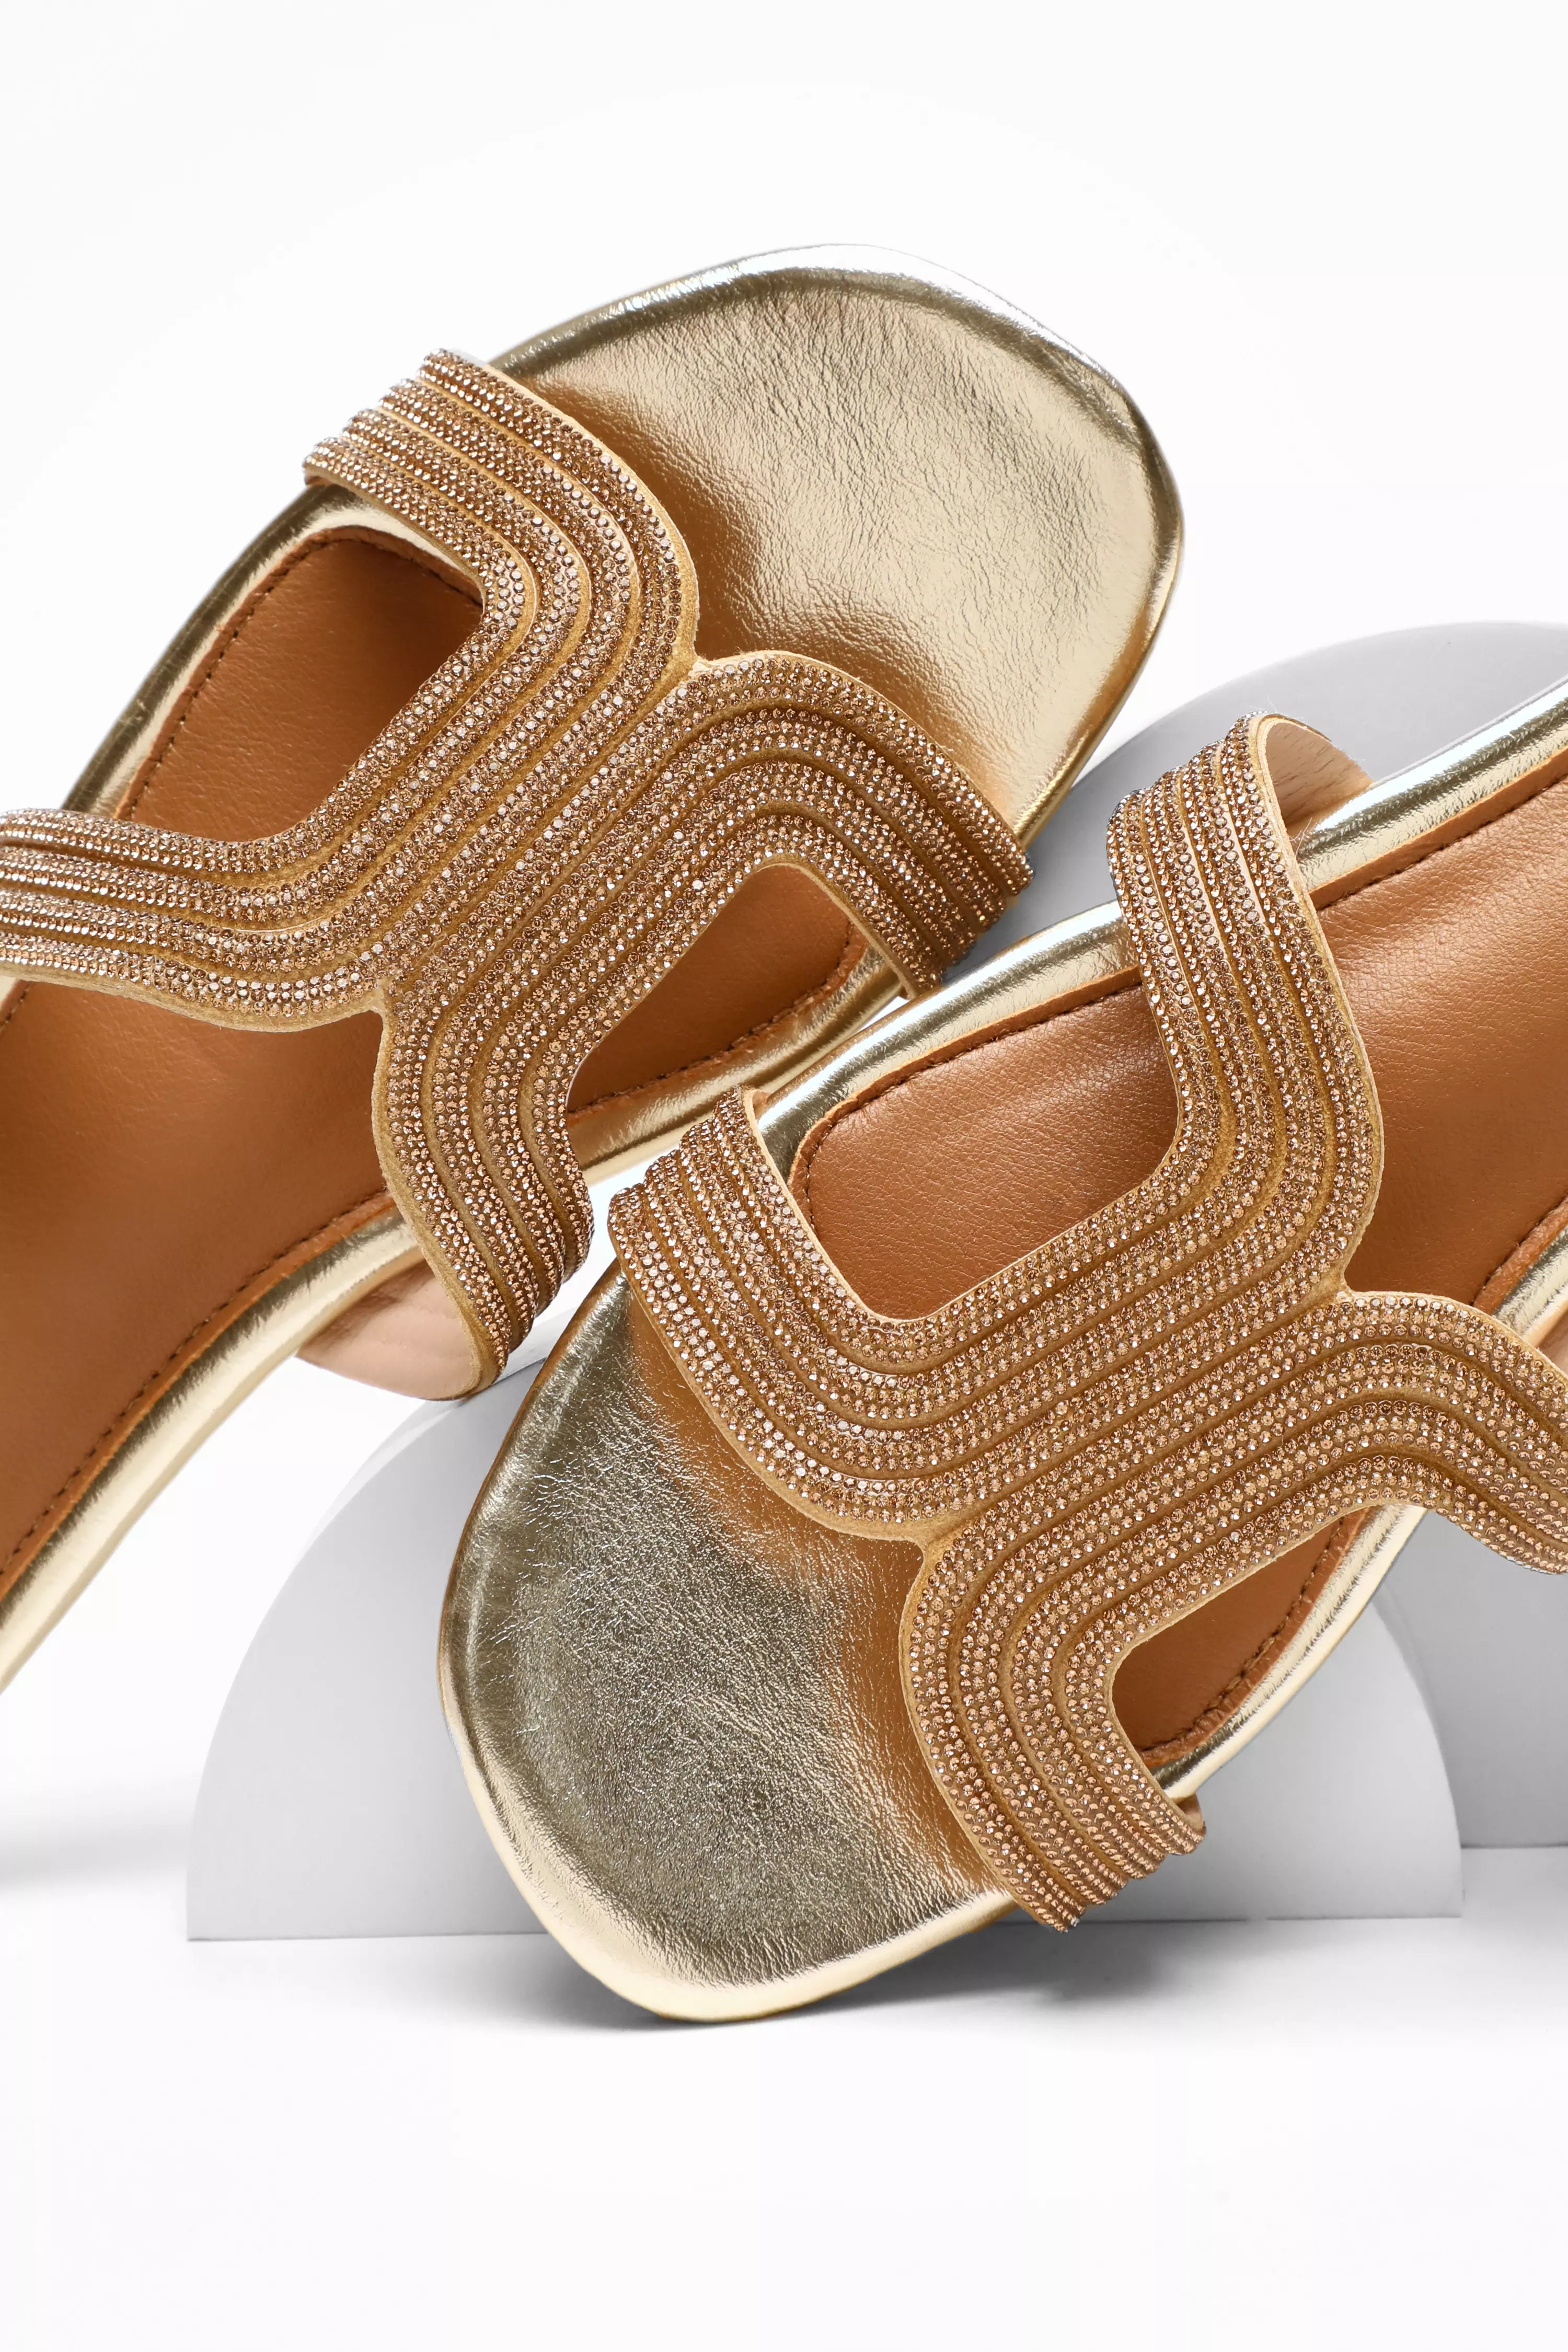 Gold Shimmer Flat Sandals